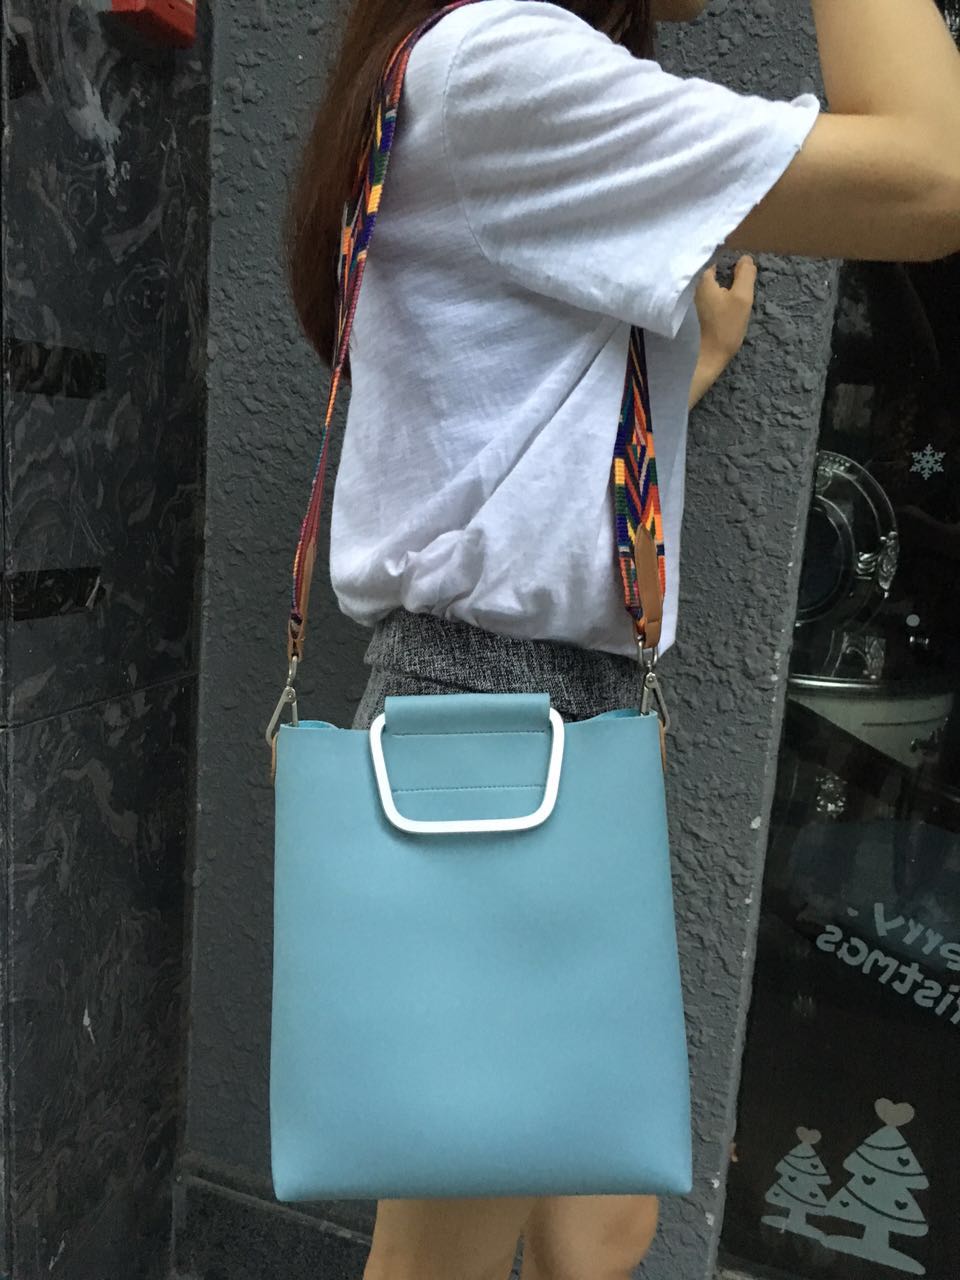 2016新款彩色肩带磁扣子母包单肩斜跨手提包韩版纯色流苏青年女包